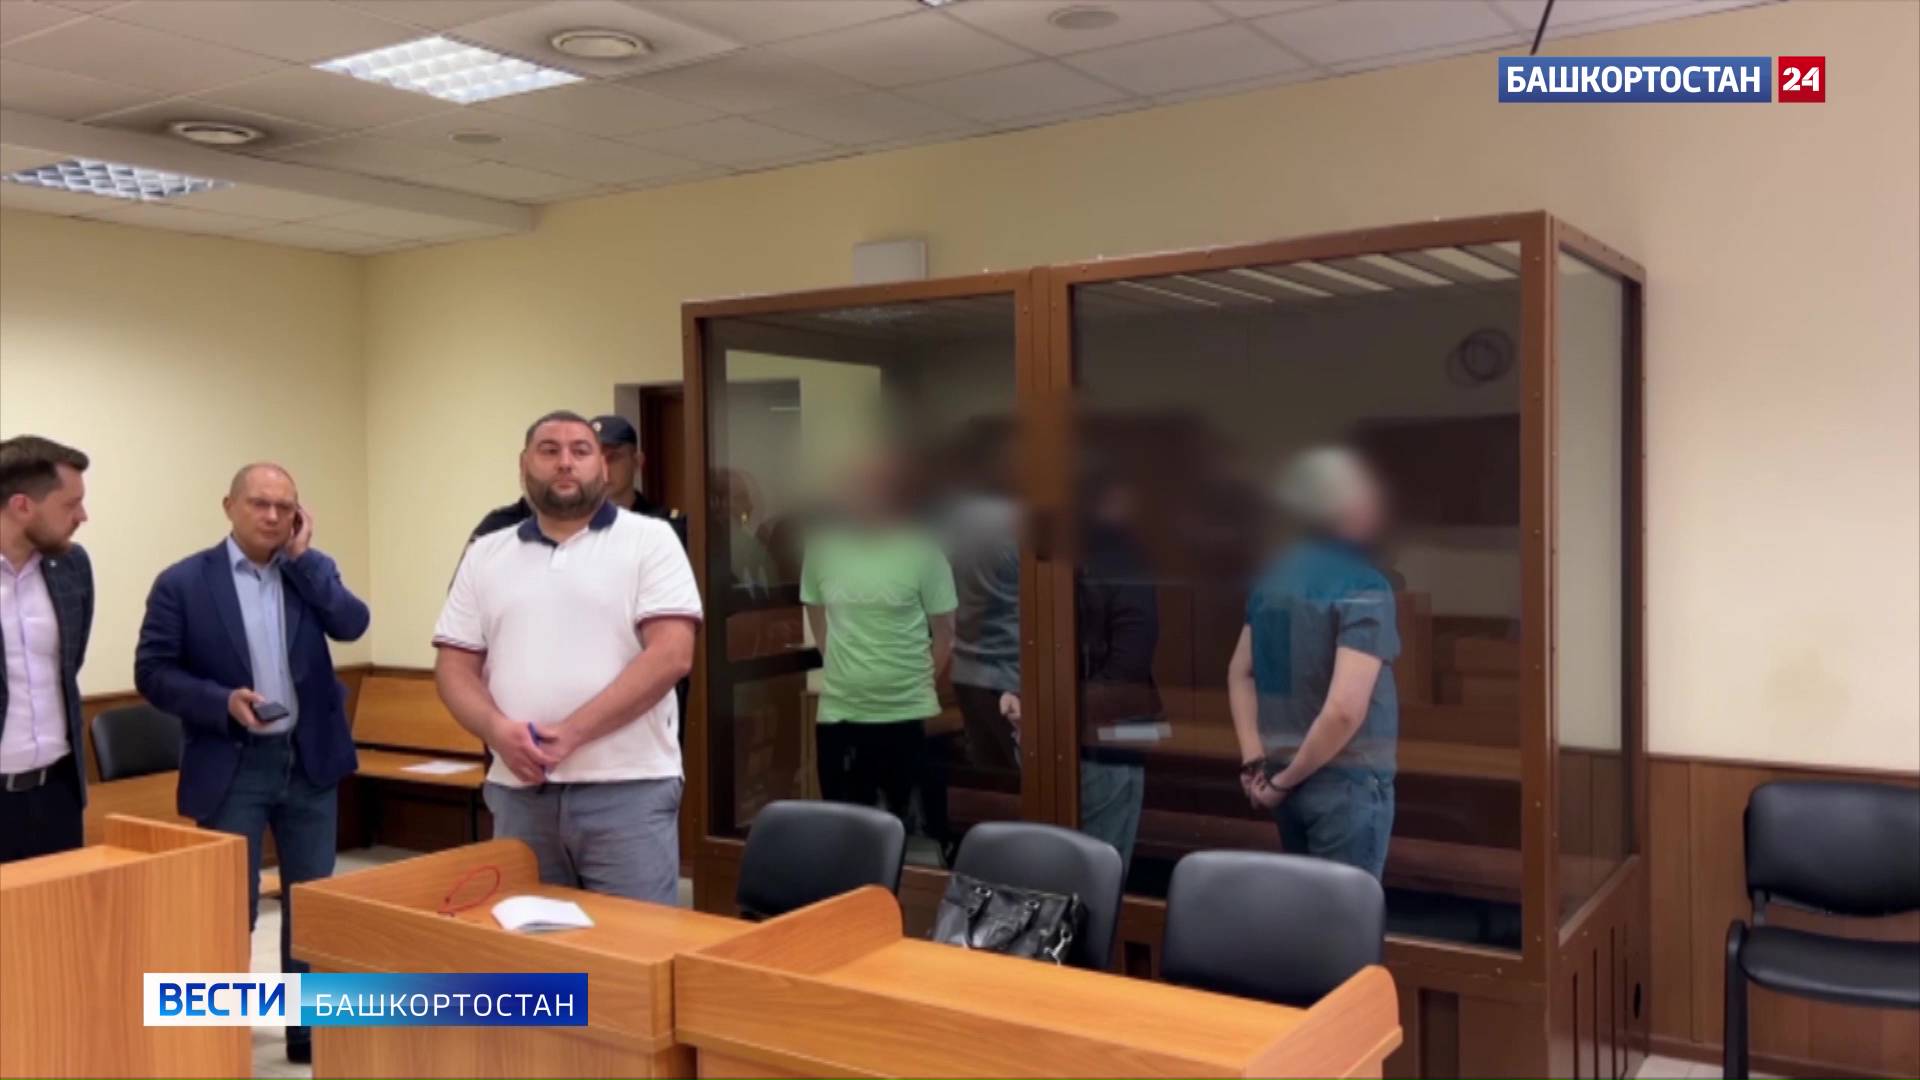 «Помогали состоятельным»: ФСБ рассказала о коррупционной схеме с участием прокуроров Башкирии 